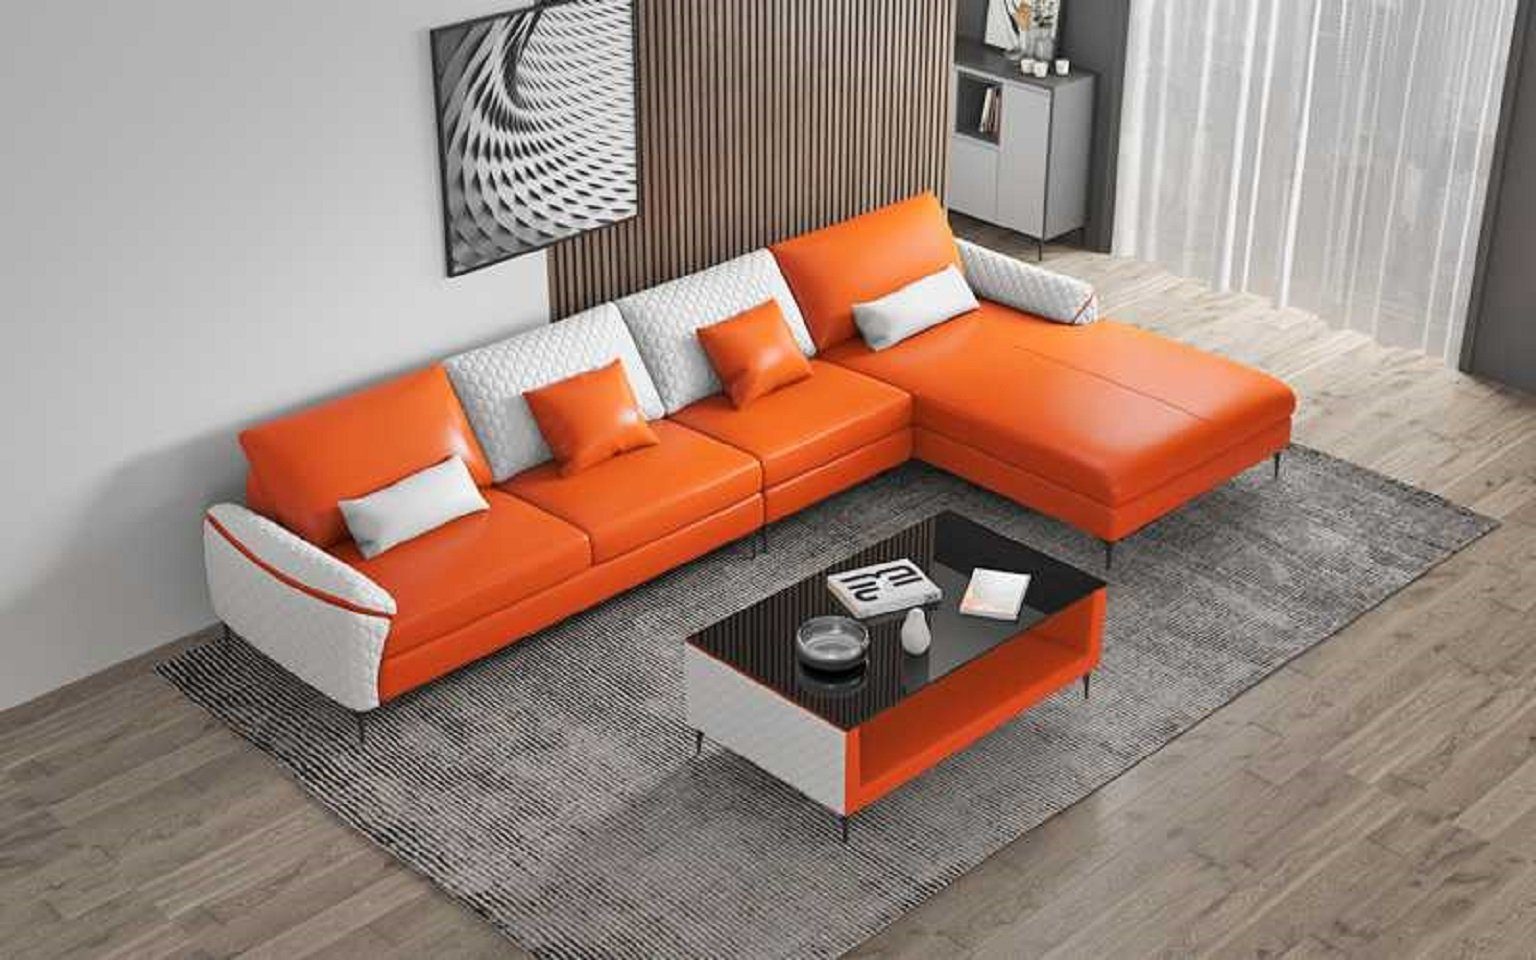 JVmoebel Ecksofa Luxus Eckgarnitur Ecksofa L Form Liege Couch Sofa Wohnzimmer, 3 Teile, Made in Europe Orange